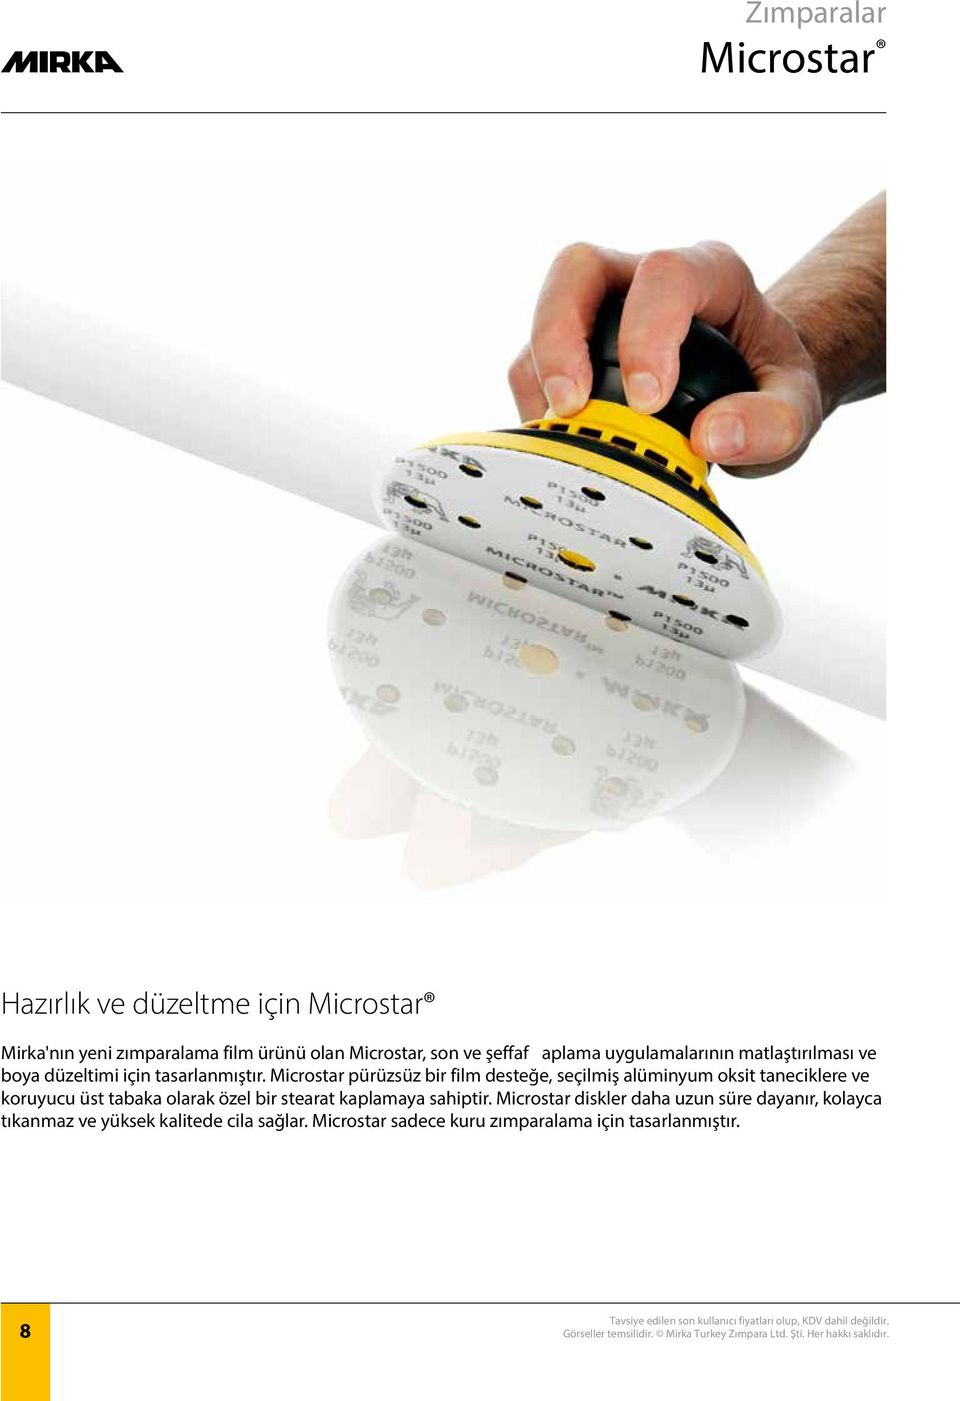 Microstar pürüzsüz bir film desteğe, seçilmiş alüminyum oksit taneciklere ve koruyucu üst tabaka olarak özel bir stearat